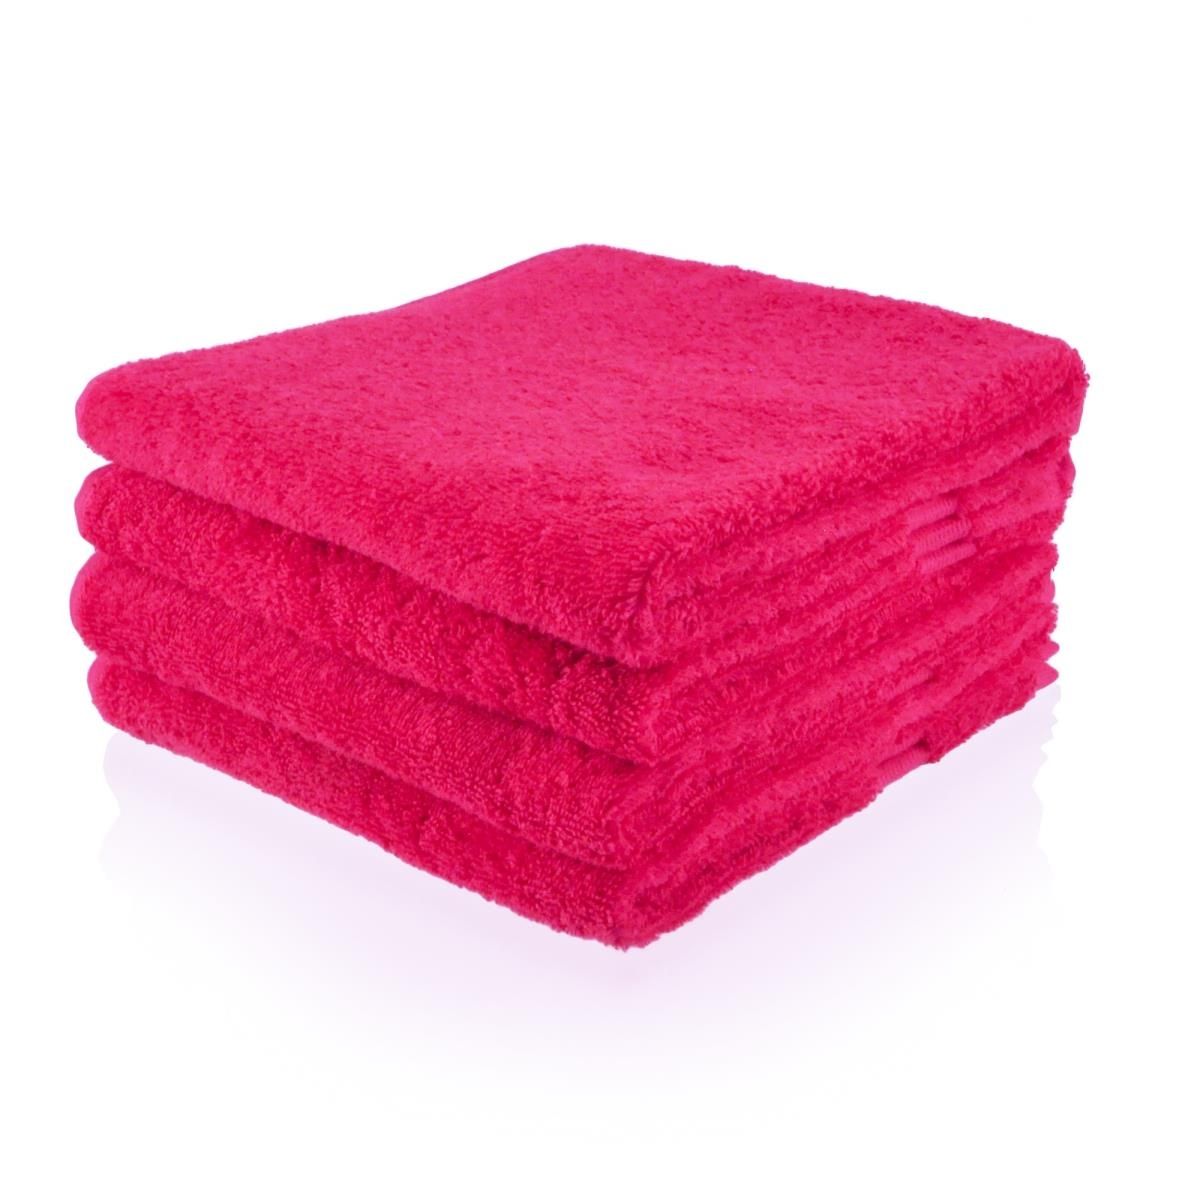 Gevlekt kleding stof Gevangene Handdoek met eigen naam of tekst bedrukt | Vele kleuren en maten